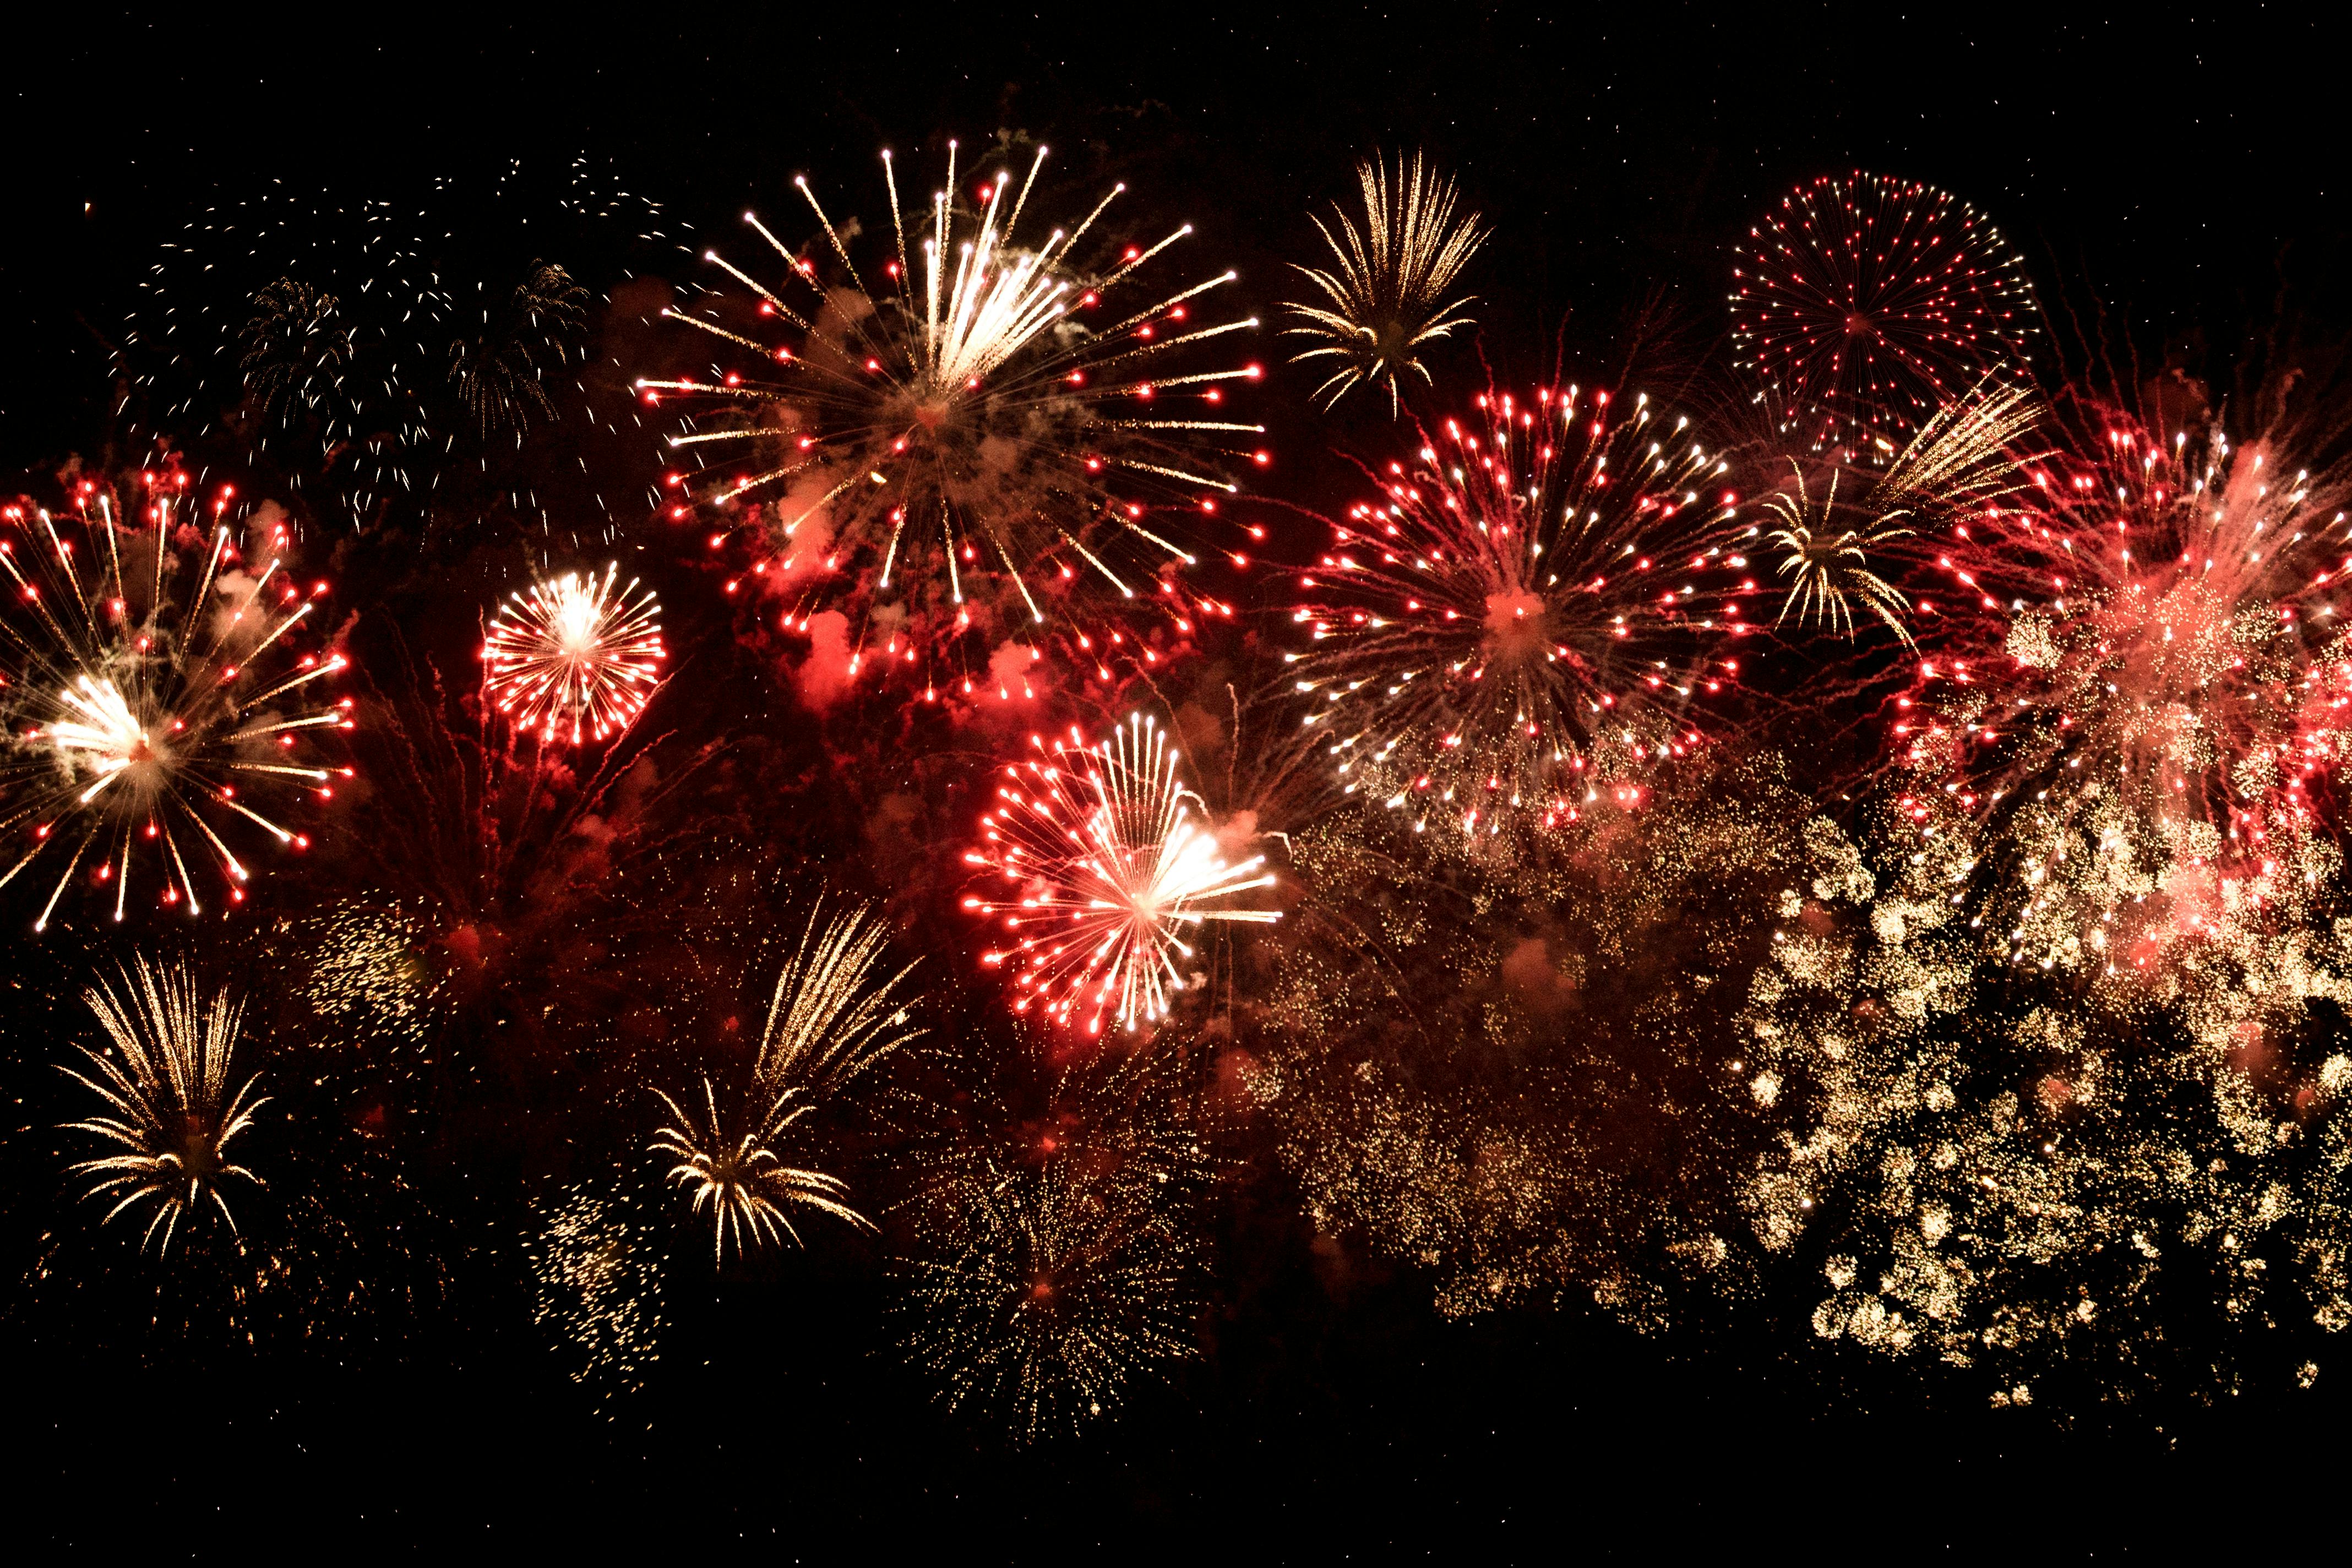 Image result for fireworks